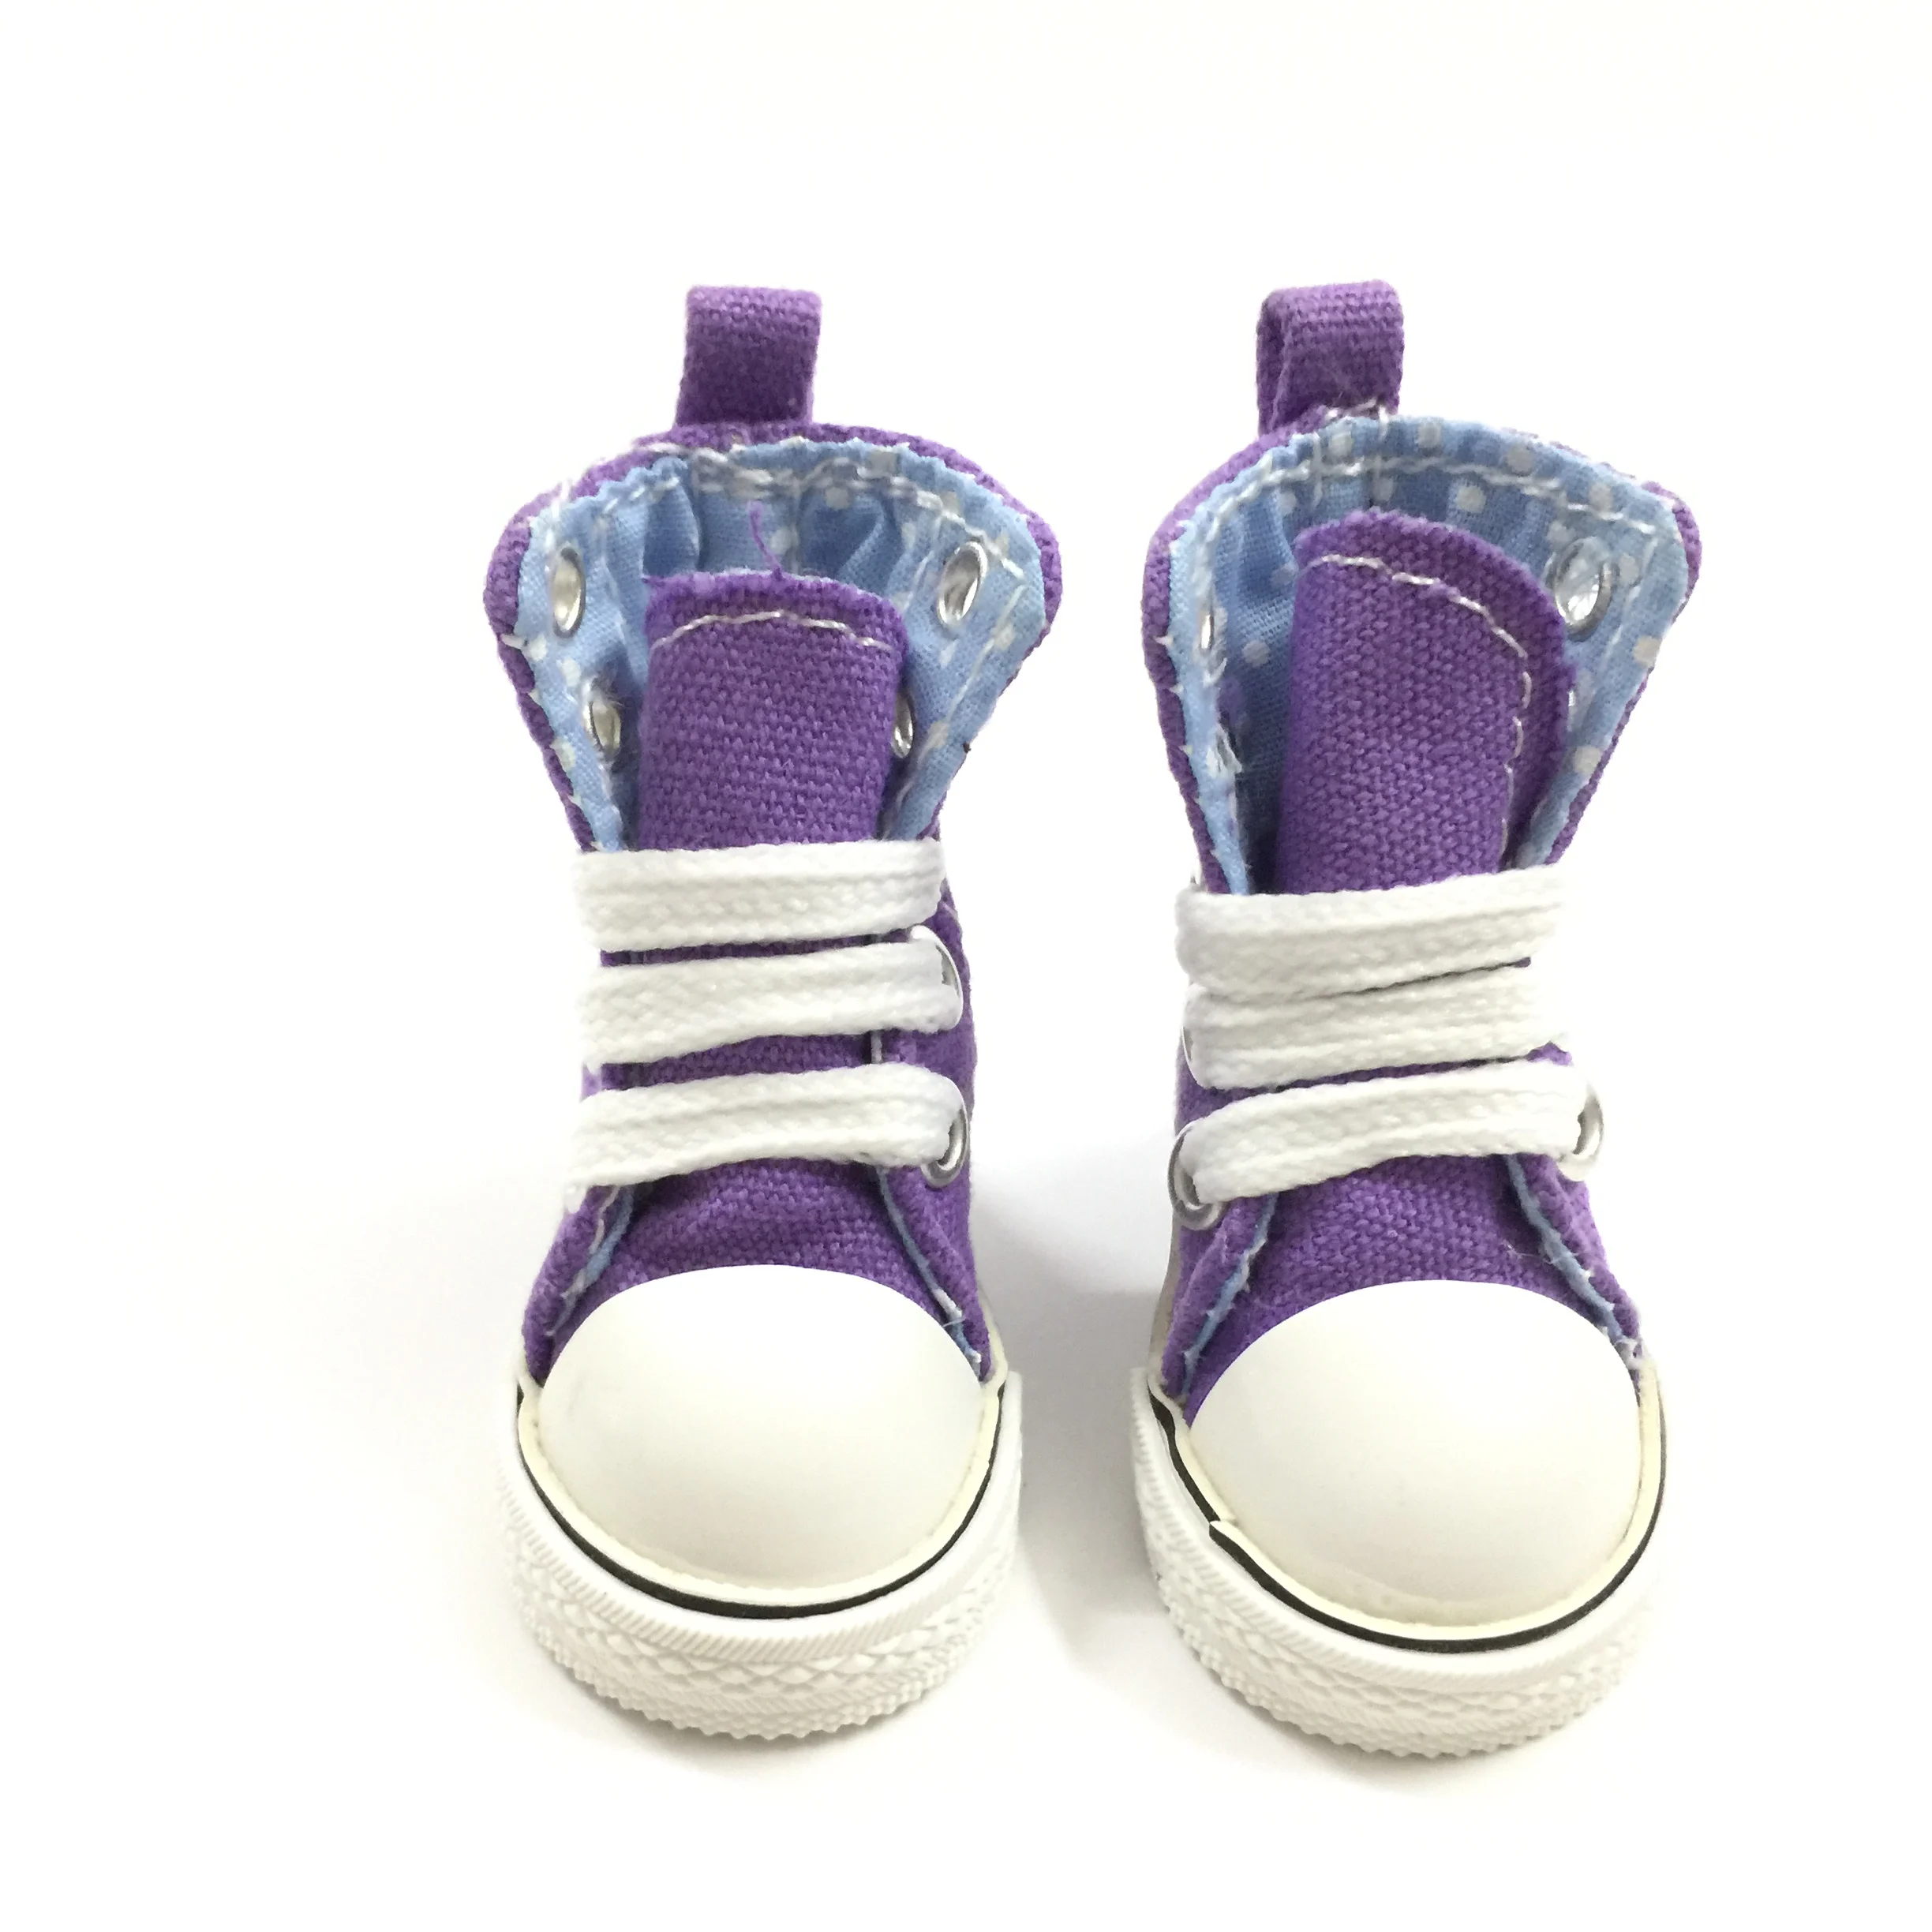 BEIOUFENG парусиновые кроссовки обувь для внутренней текстильной куклы, 1/6 BJD кукольная обувь для кукольной куклы, 5 см кукольные ботинки Спортивная обувь одна пара